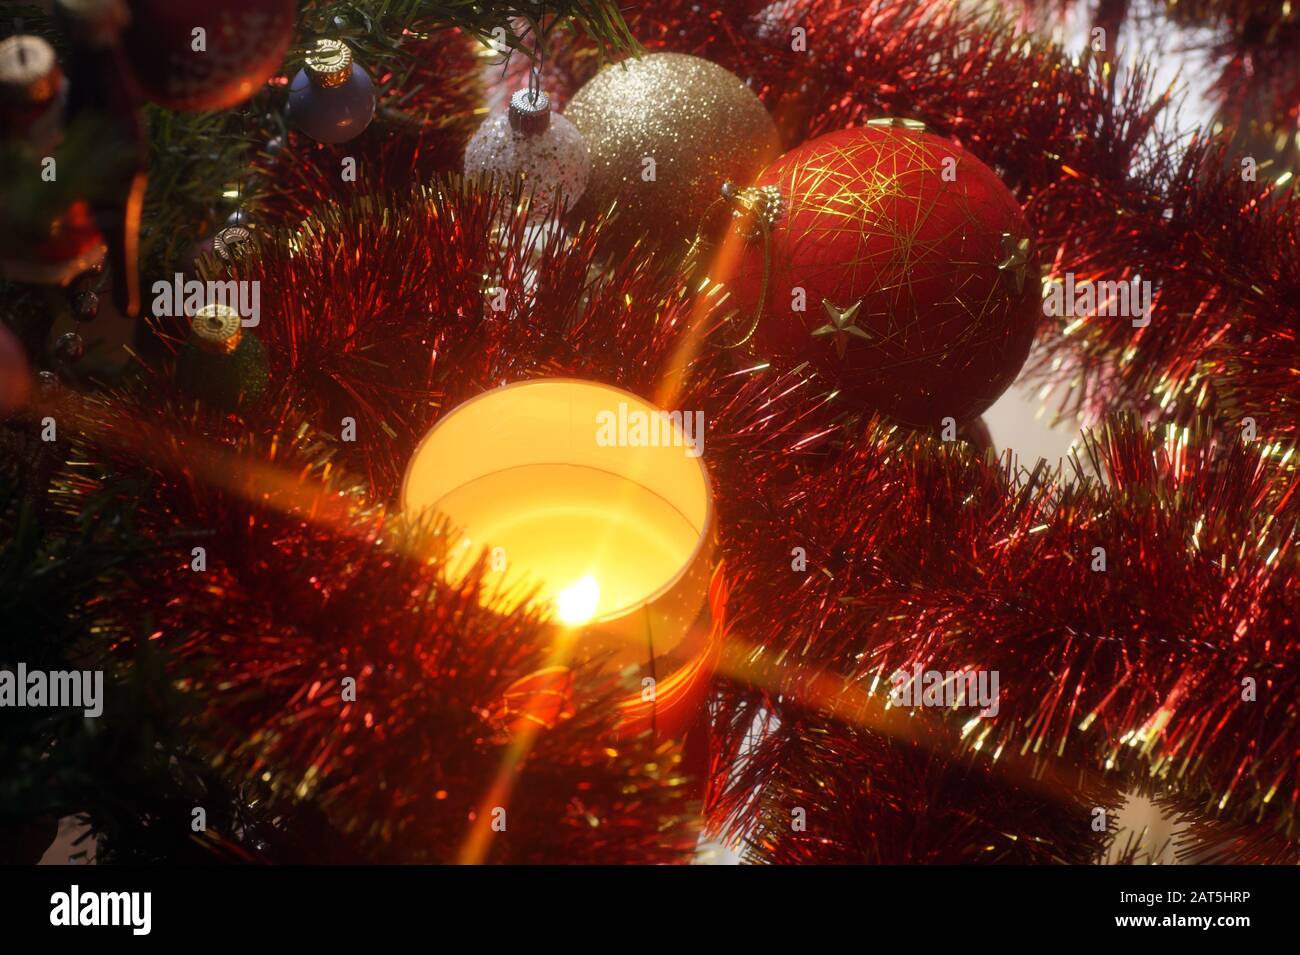 Decorazioni natalizie e candela illuminata. Atmosfere natalizie. Foto Stock